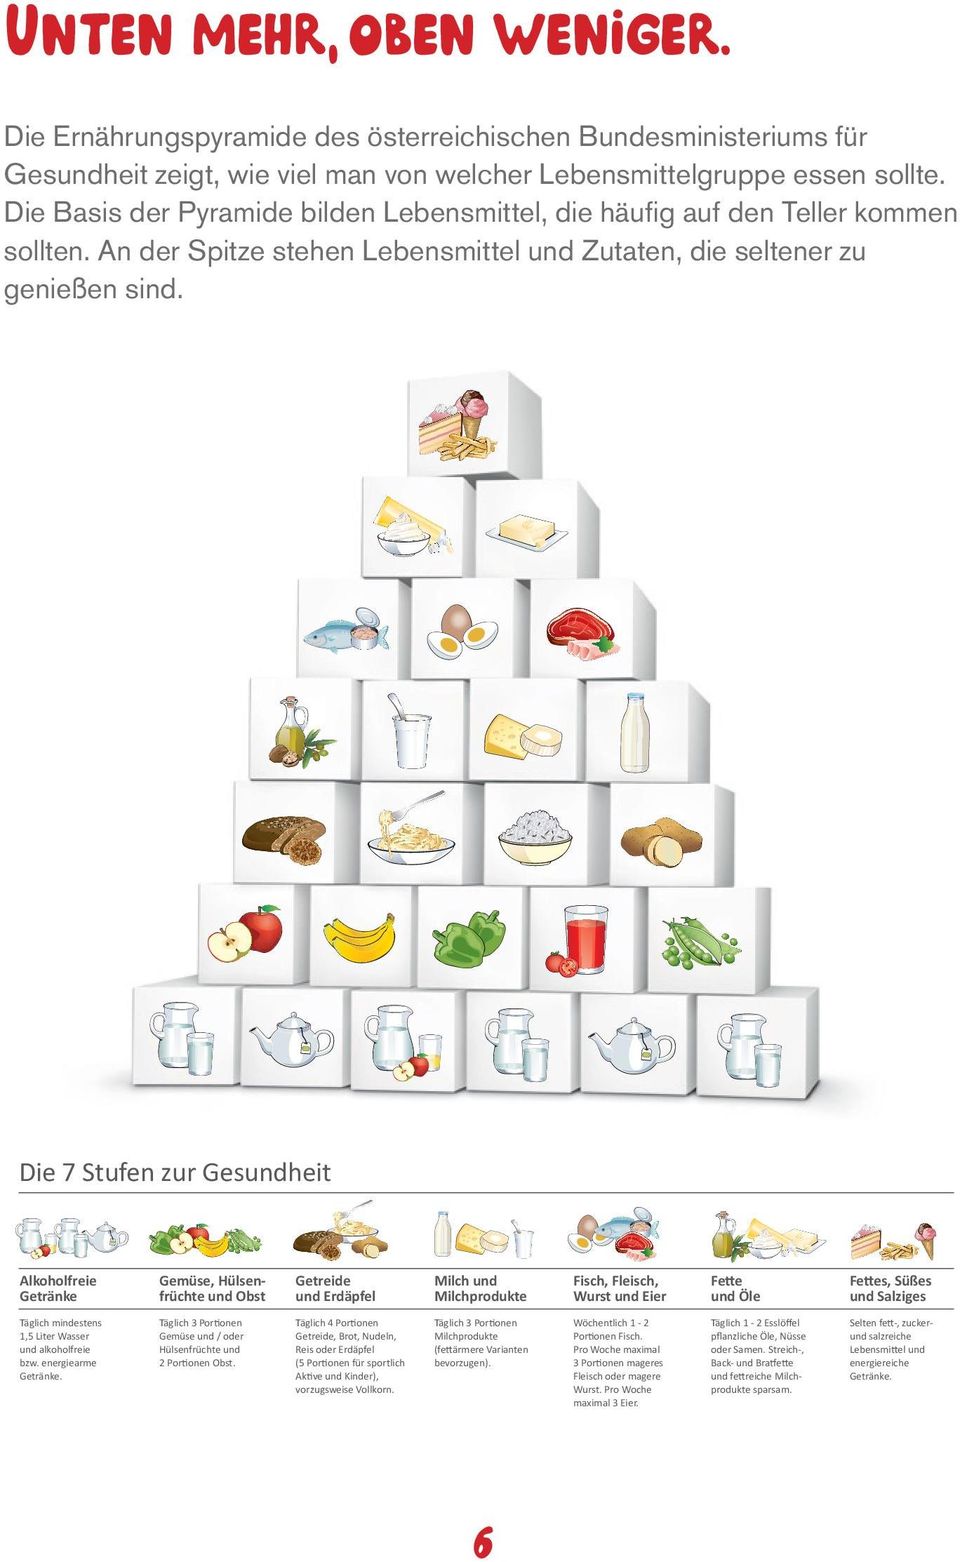 Ernährungspyramide Die 7 Stufen zur Gesundheit Alkoholfreie Getränke Gemüse, Hülsenfrüchte und Obst Getreide und Erdäpfel Milch und Milchprodukte Fisch, Fleisch, Wurst und Eier Fette und Öle Fettes,